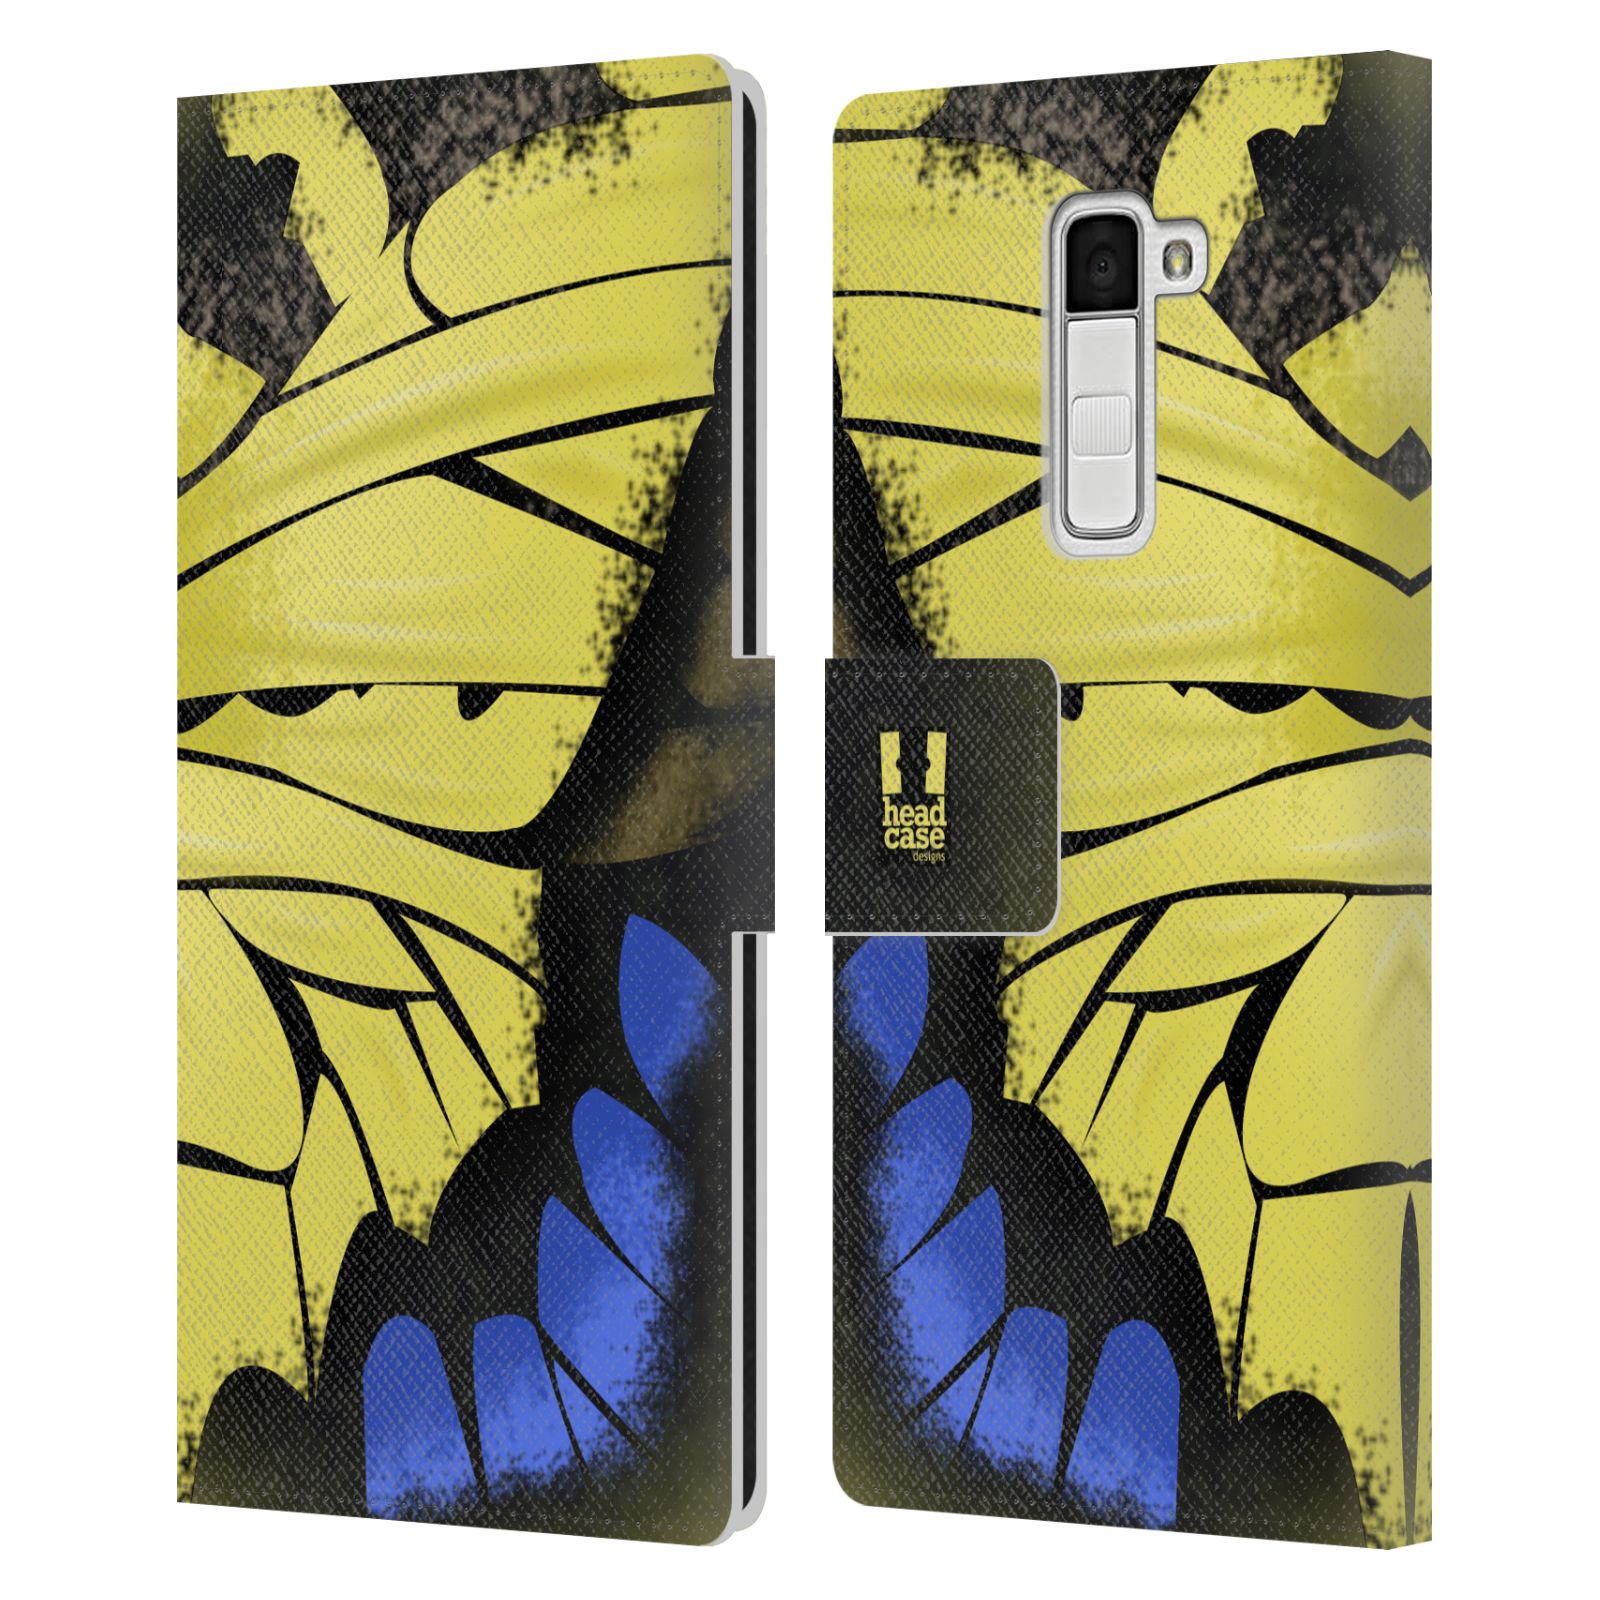 HEAD CASE Flipové pouzdro pro mobil LG K10 motýl a křídla kreslený vzor žlutá a modrá